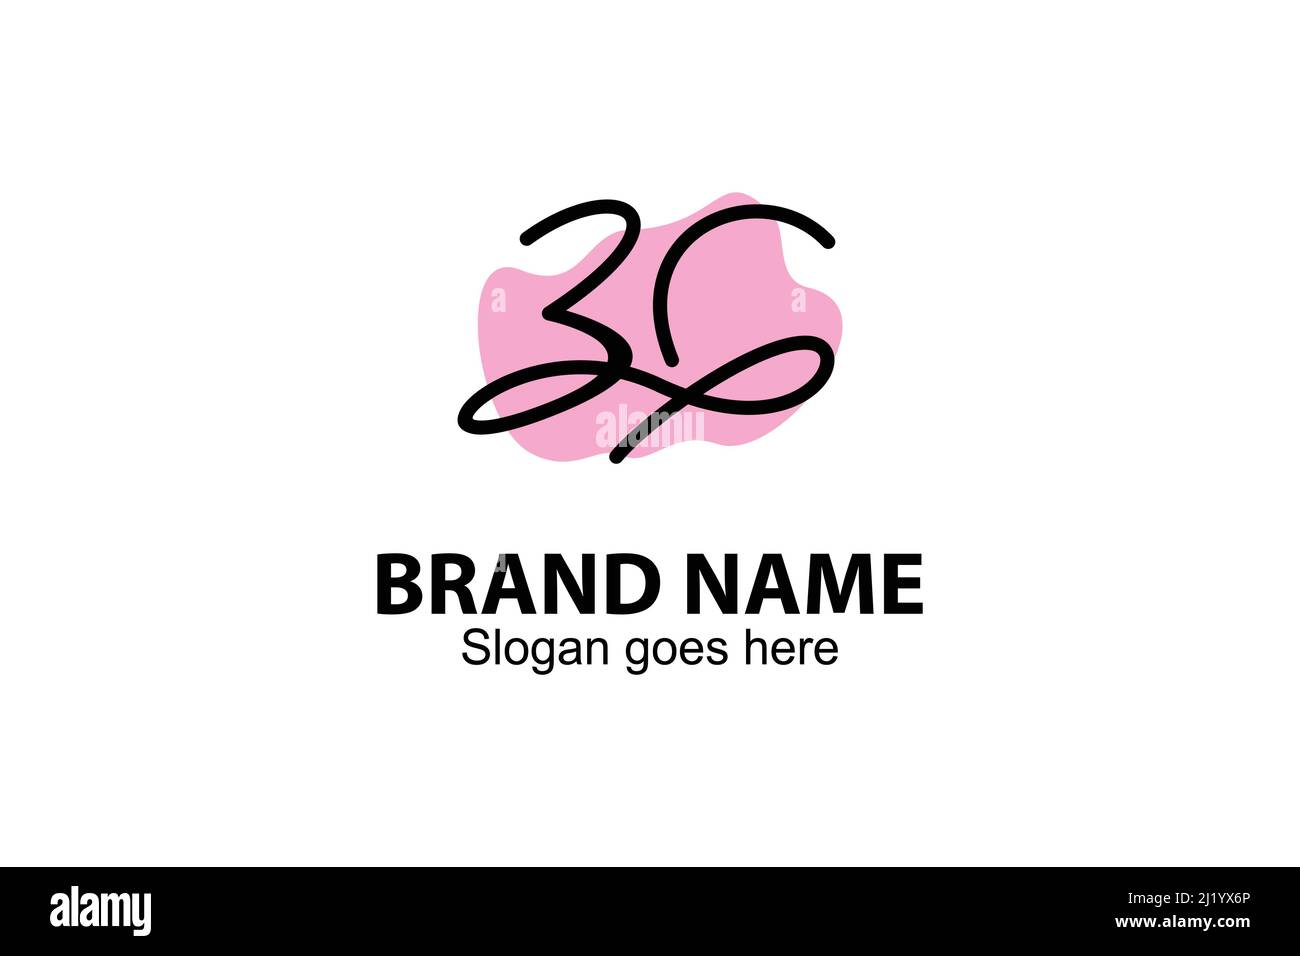 Abstract 3G Buchstaben Logo Linie Kunst Design Konzept. Modernes und schönes 3G Lettering Line Art abstraktes Logo, auch spärlich und einzigartig. Stock Vektor